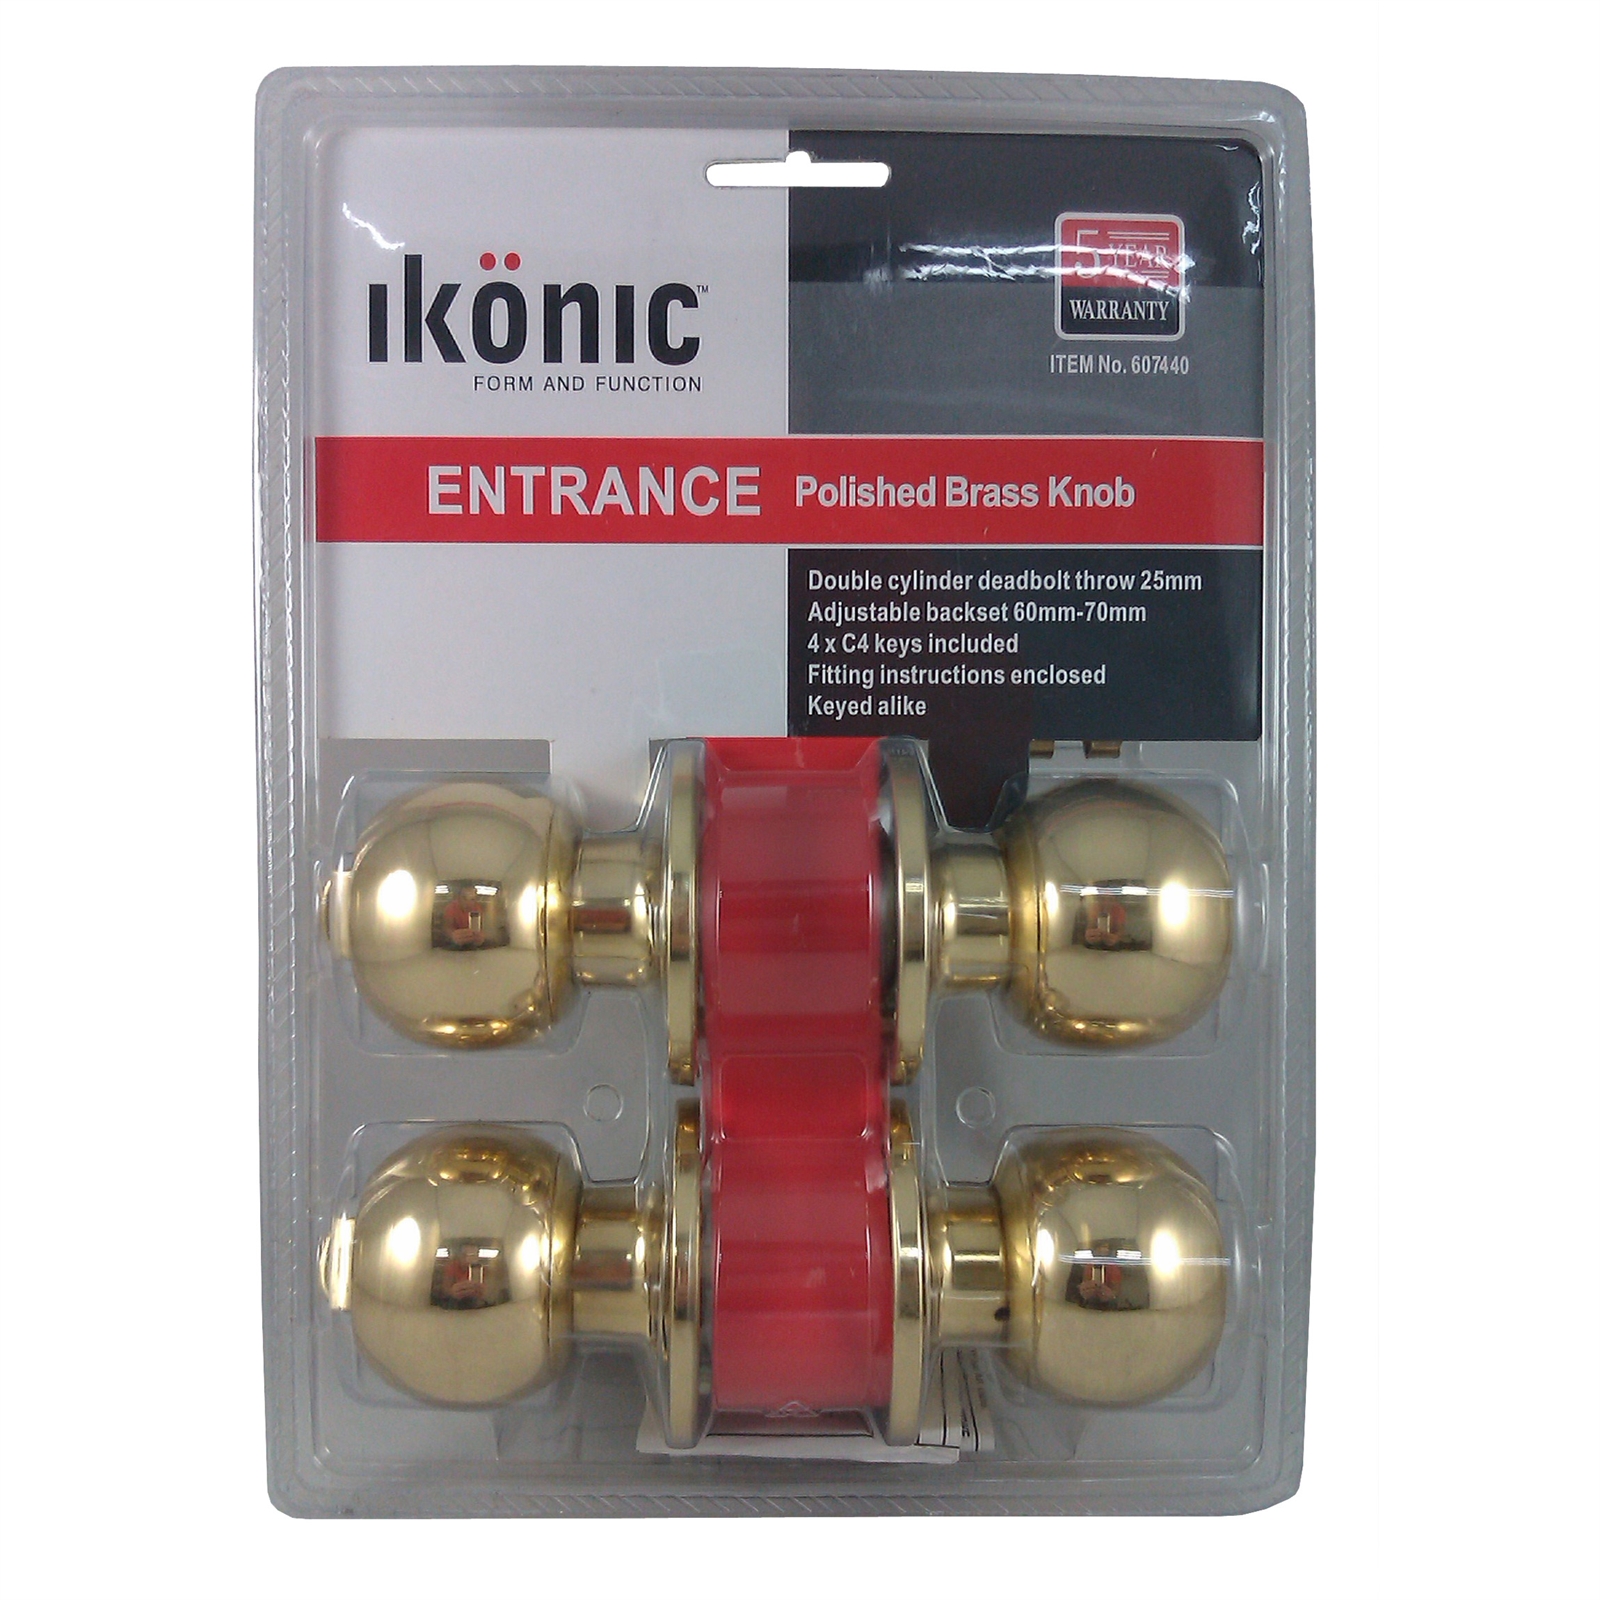 Ikonic Polished Brass Keyed Alike Entrance Set With 4 Keys - 2 Pack